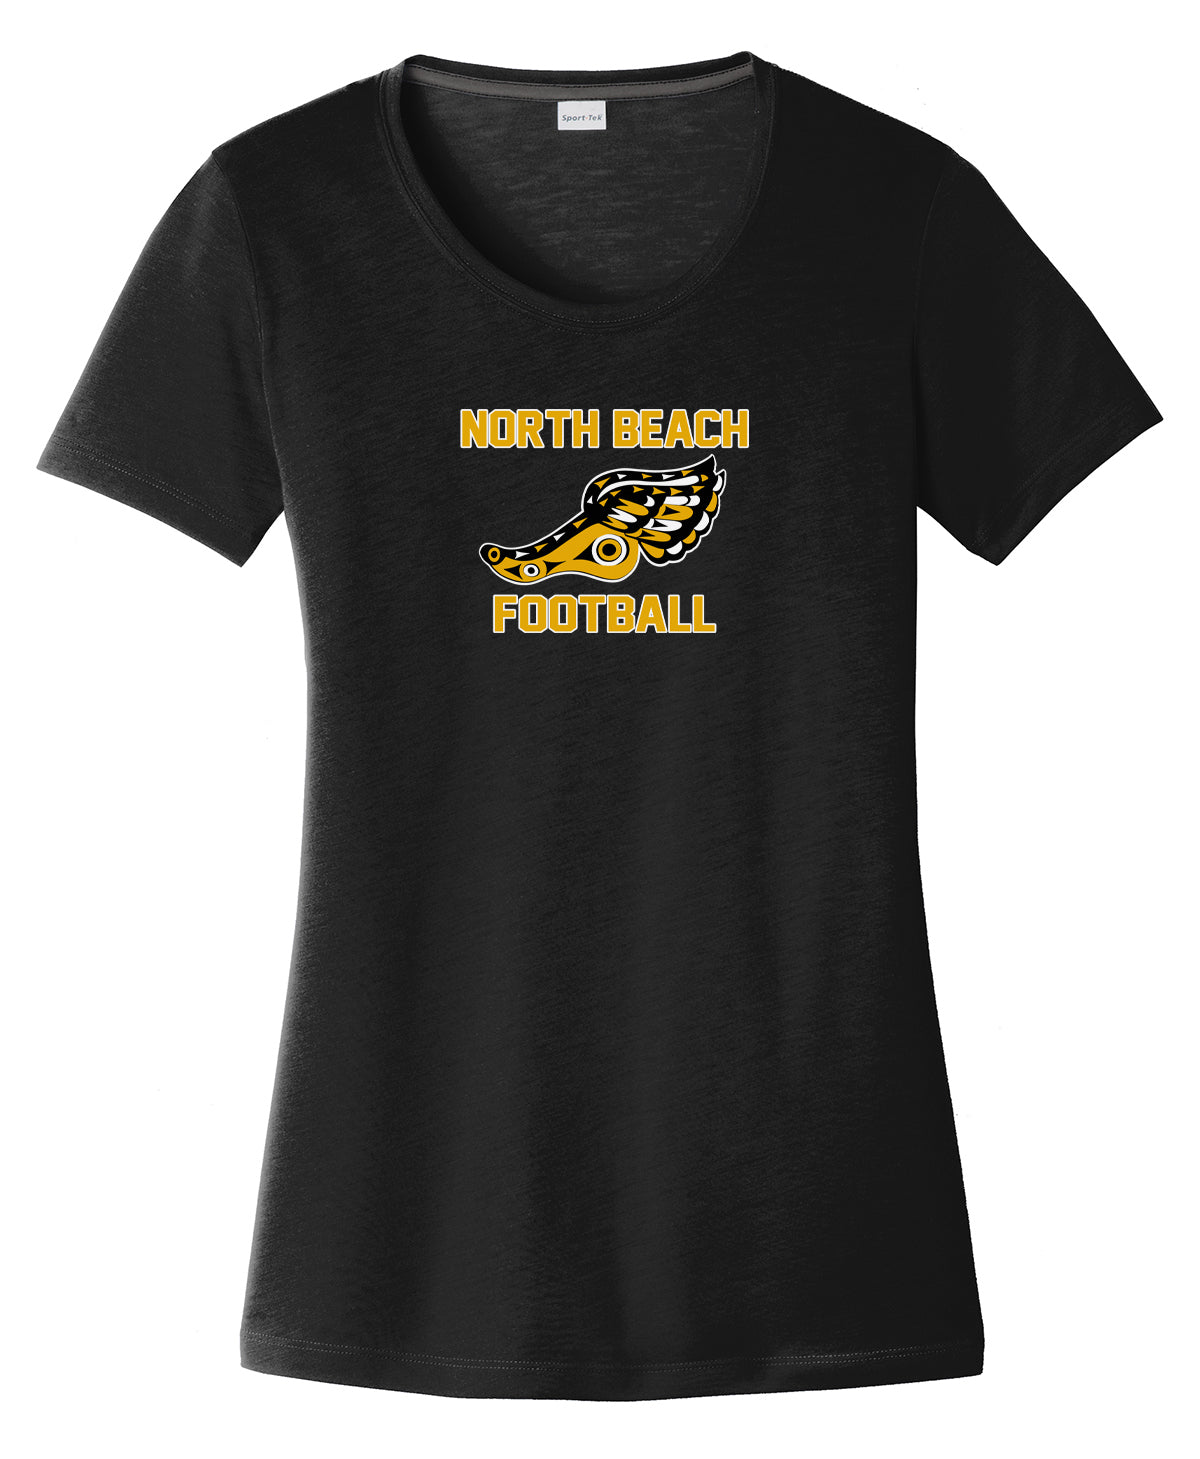 North Beach Football  Women's CottonTouch Performance T-Shirt